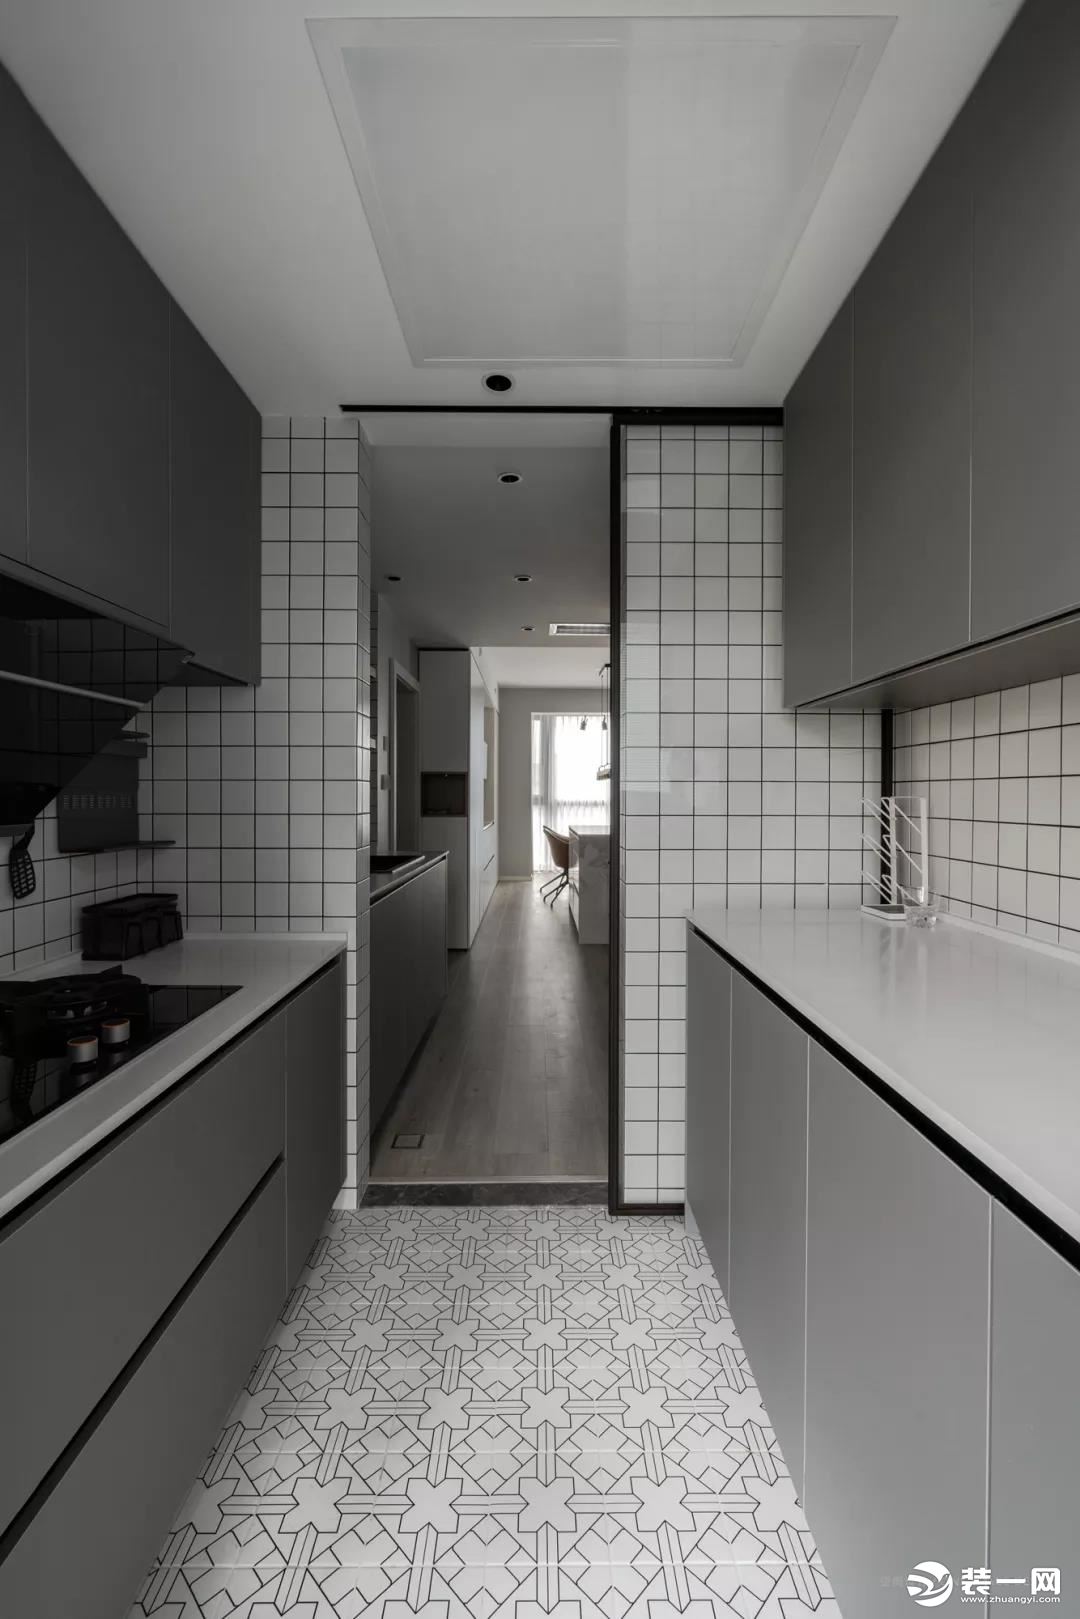 中厨区域，二字型的操作台格局，白色花砖、灰色橱柜、墙面是白色小格砖，整体简约文艺，也让做饭显得轻松方